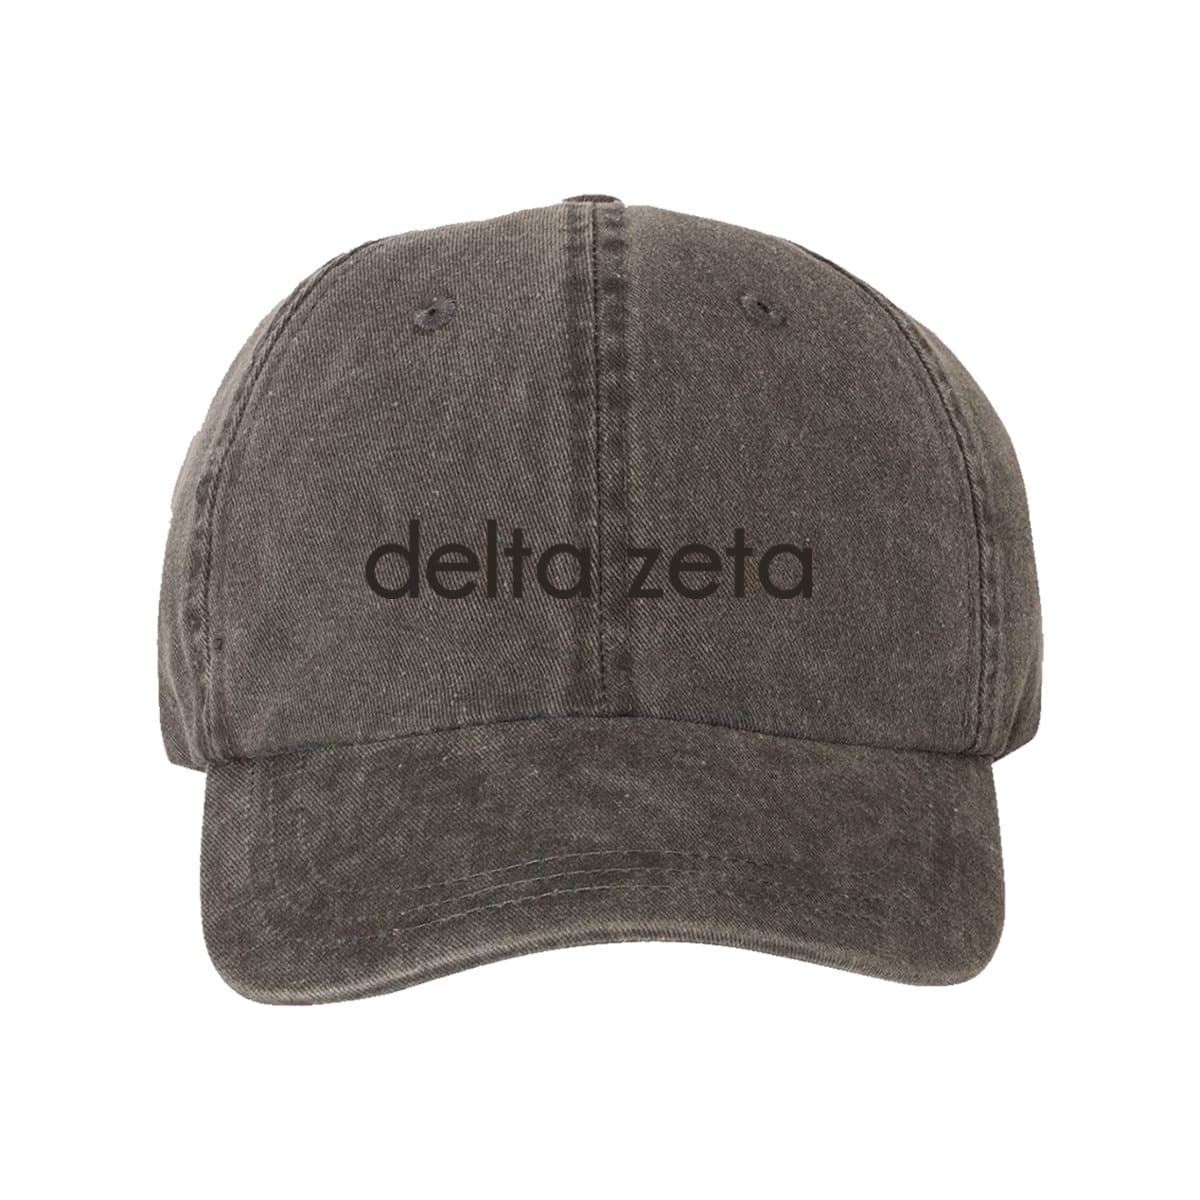 Delta Zeta Tone On Tone Hat | Delta Zeta | Headwear > Billed hats